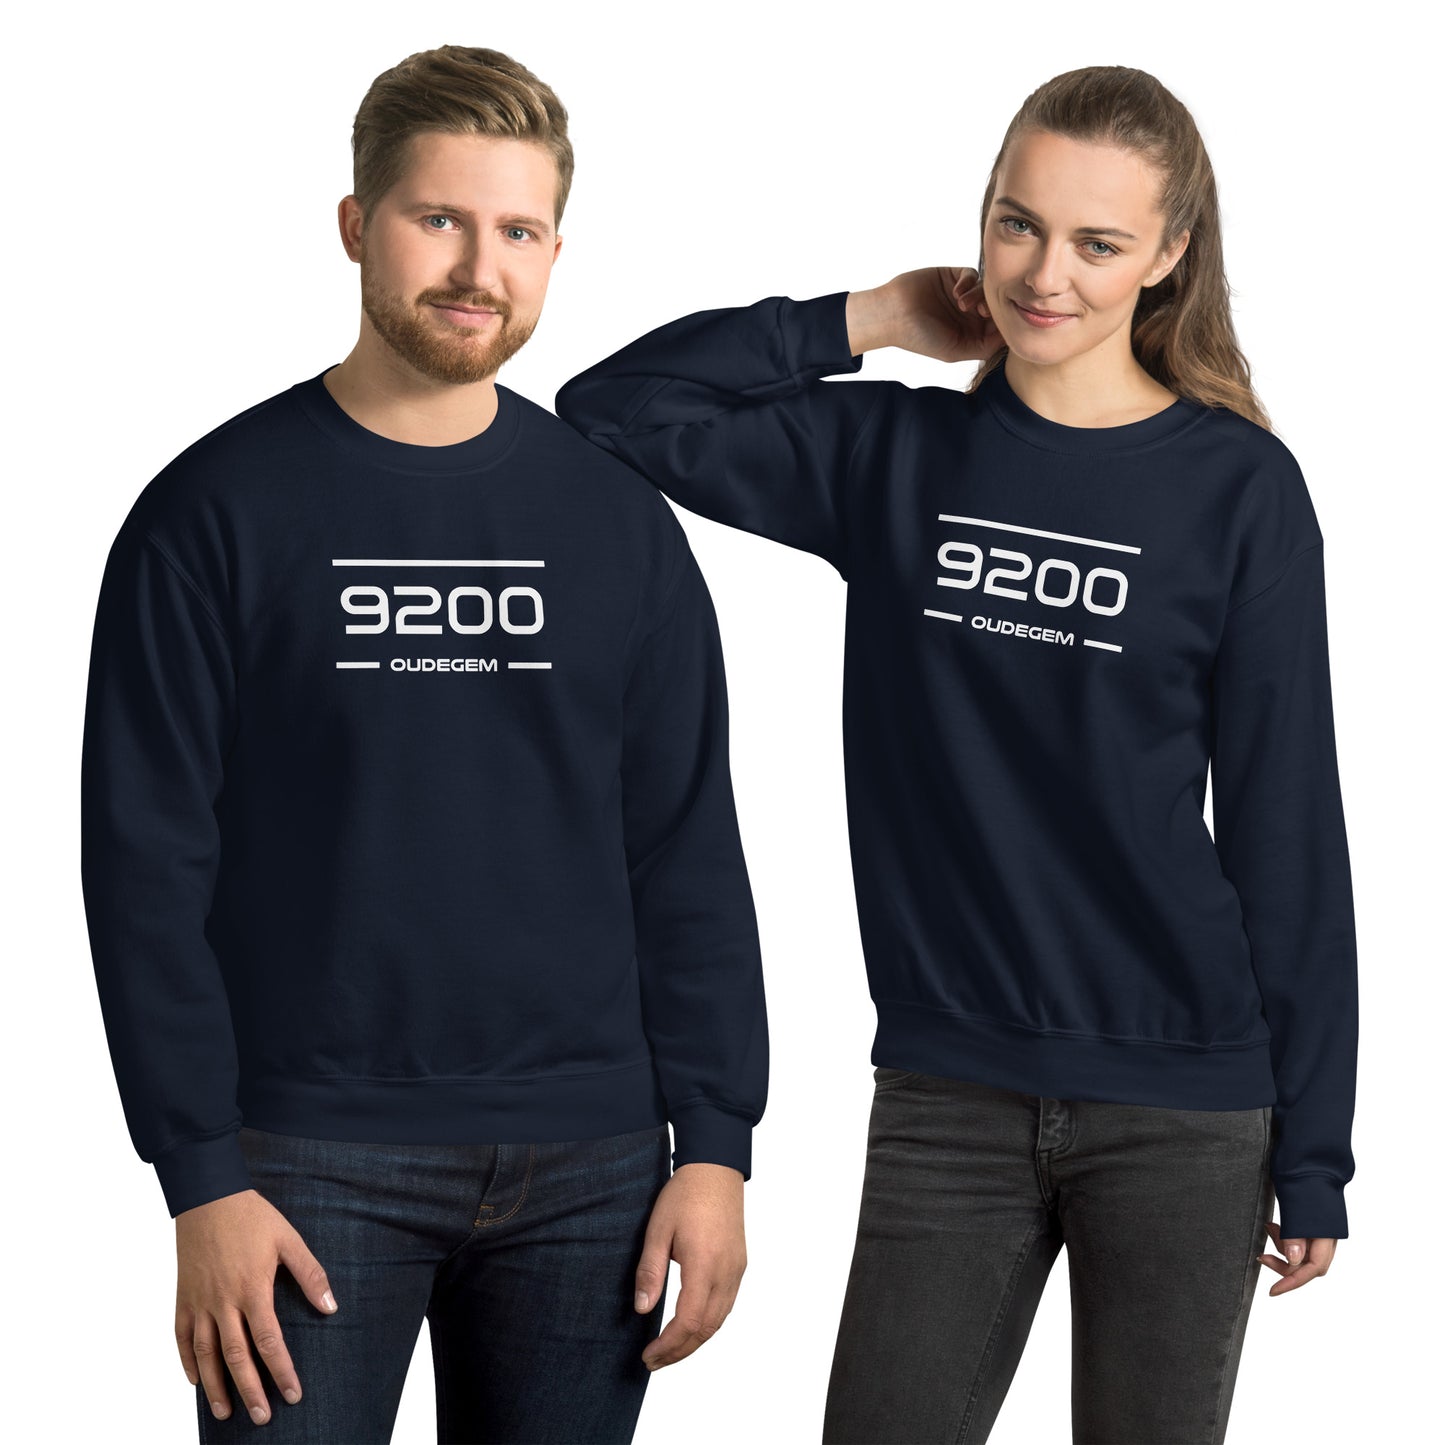 Sweater - 9200 - Oudegem (M/V)